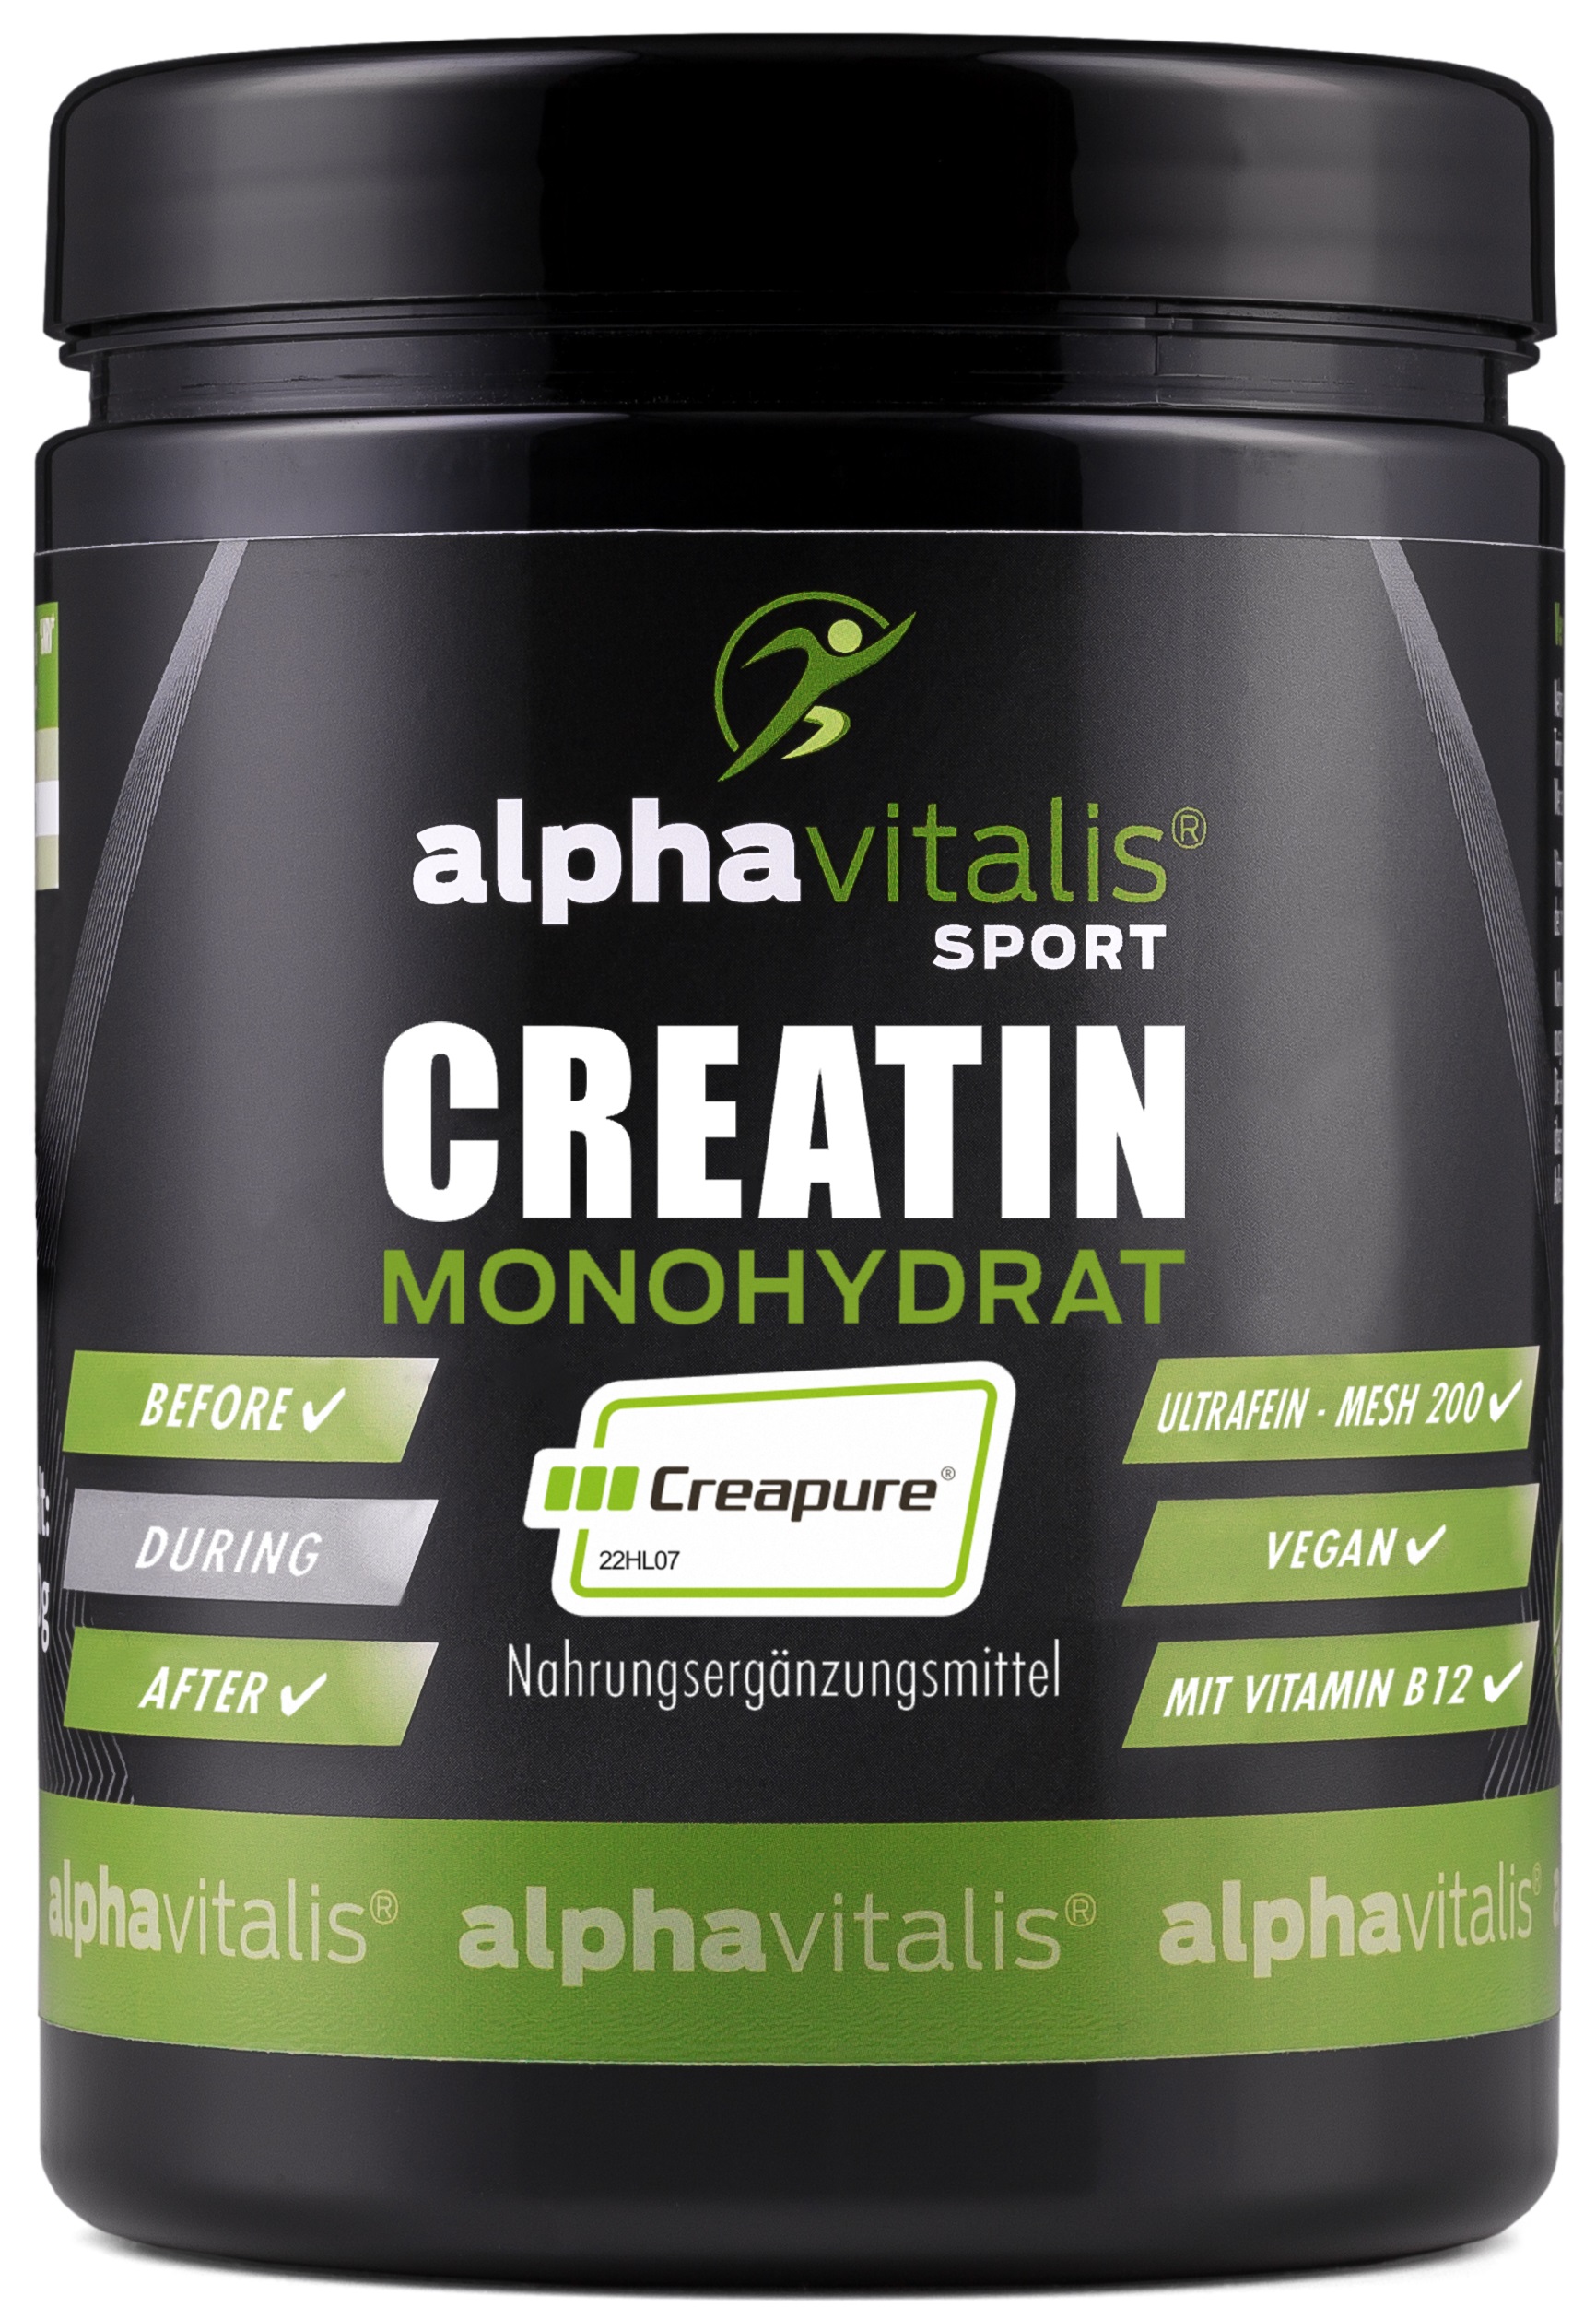 Alphavitalis Creatin Monohydrat Creapure® | ultrafeine Mesh 200 Qualität | mit Vitamin B12